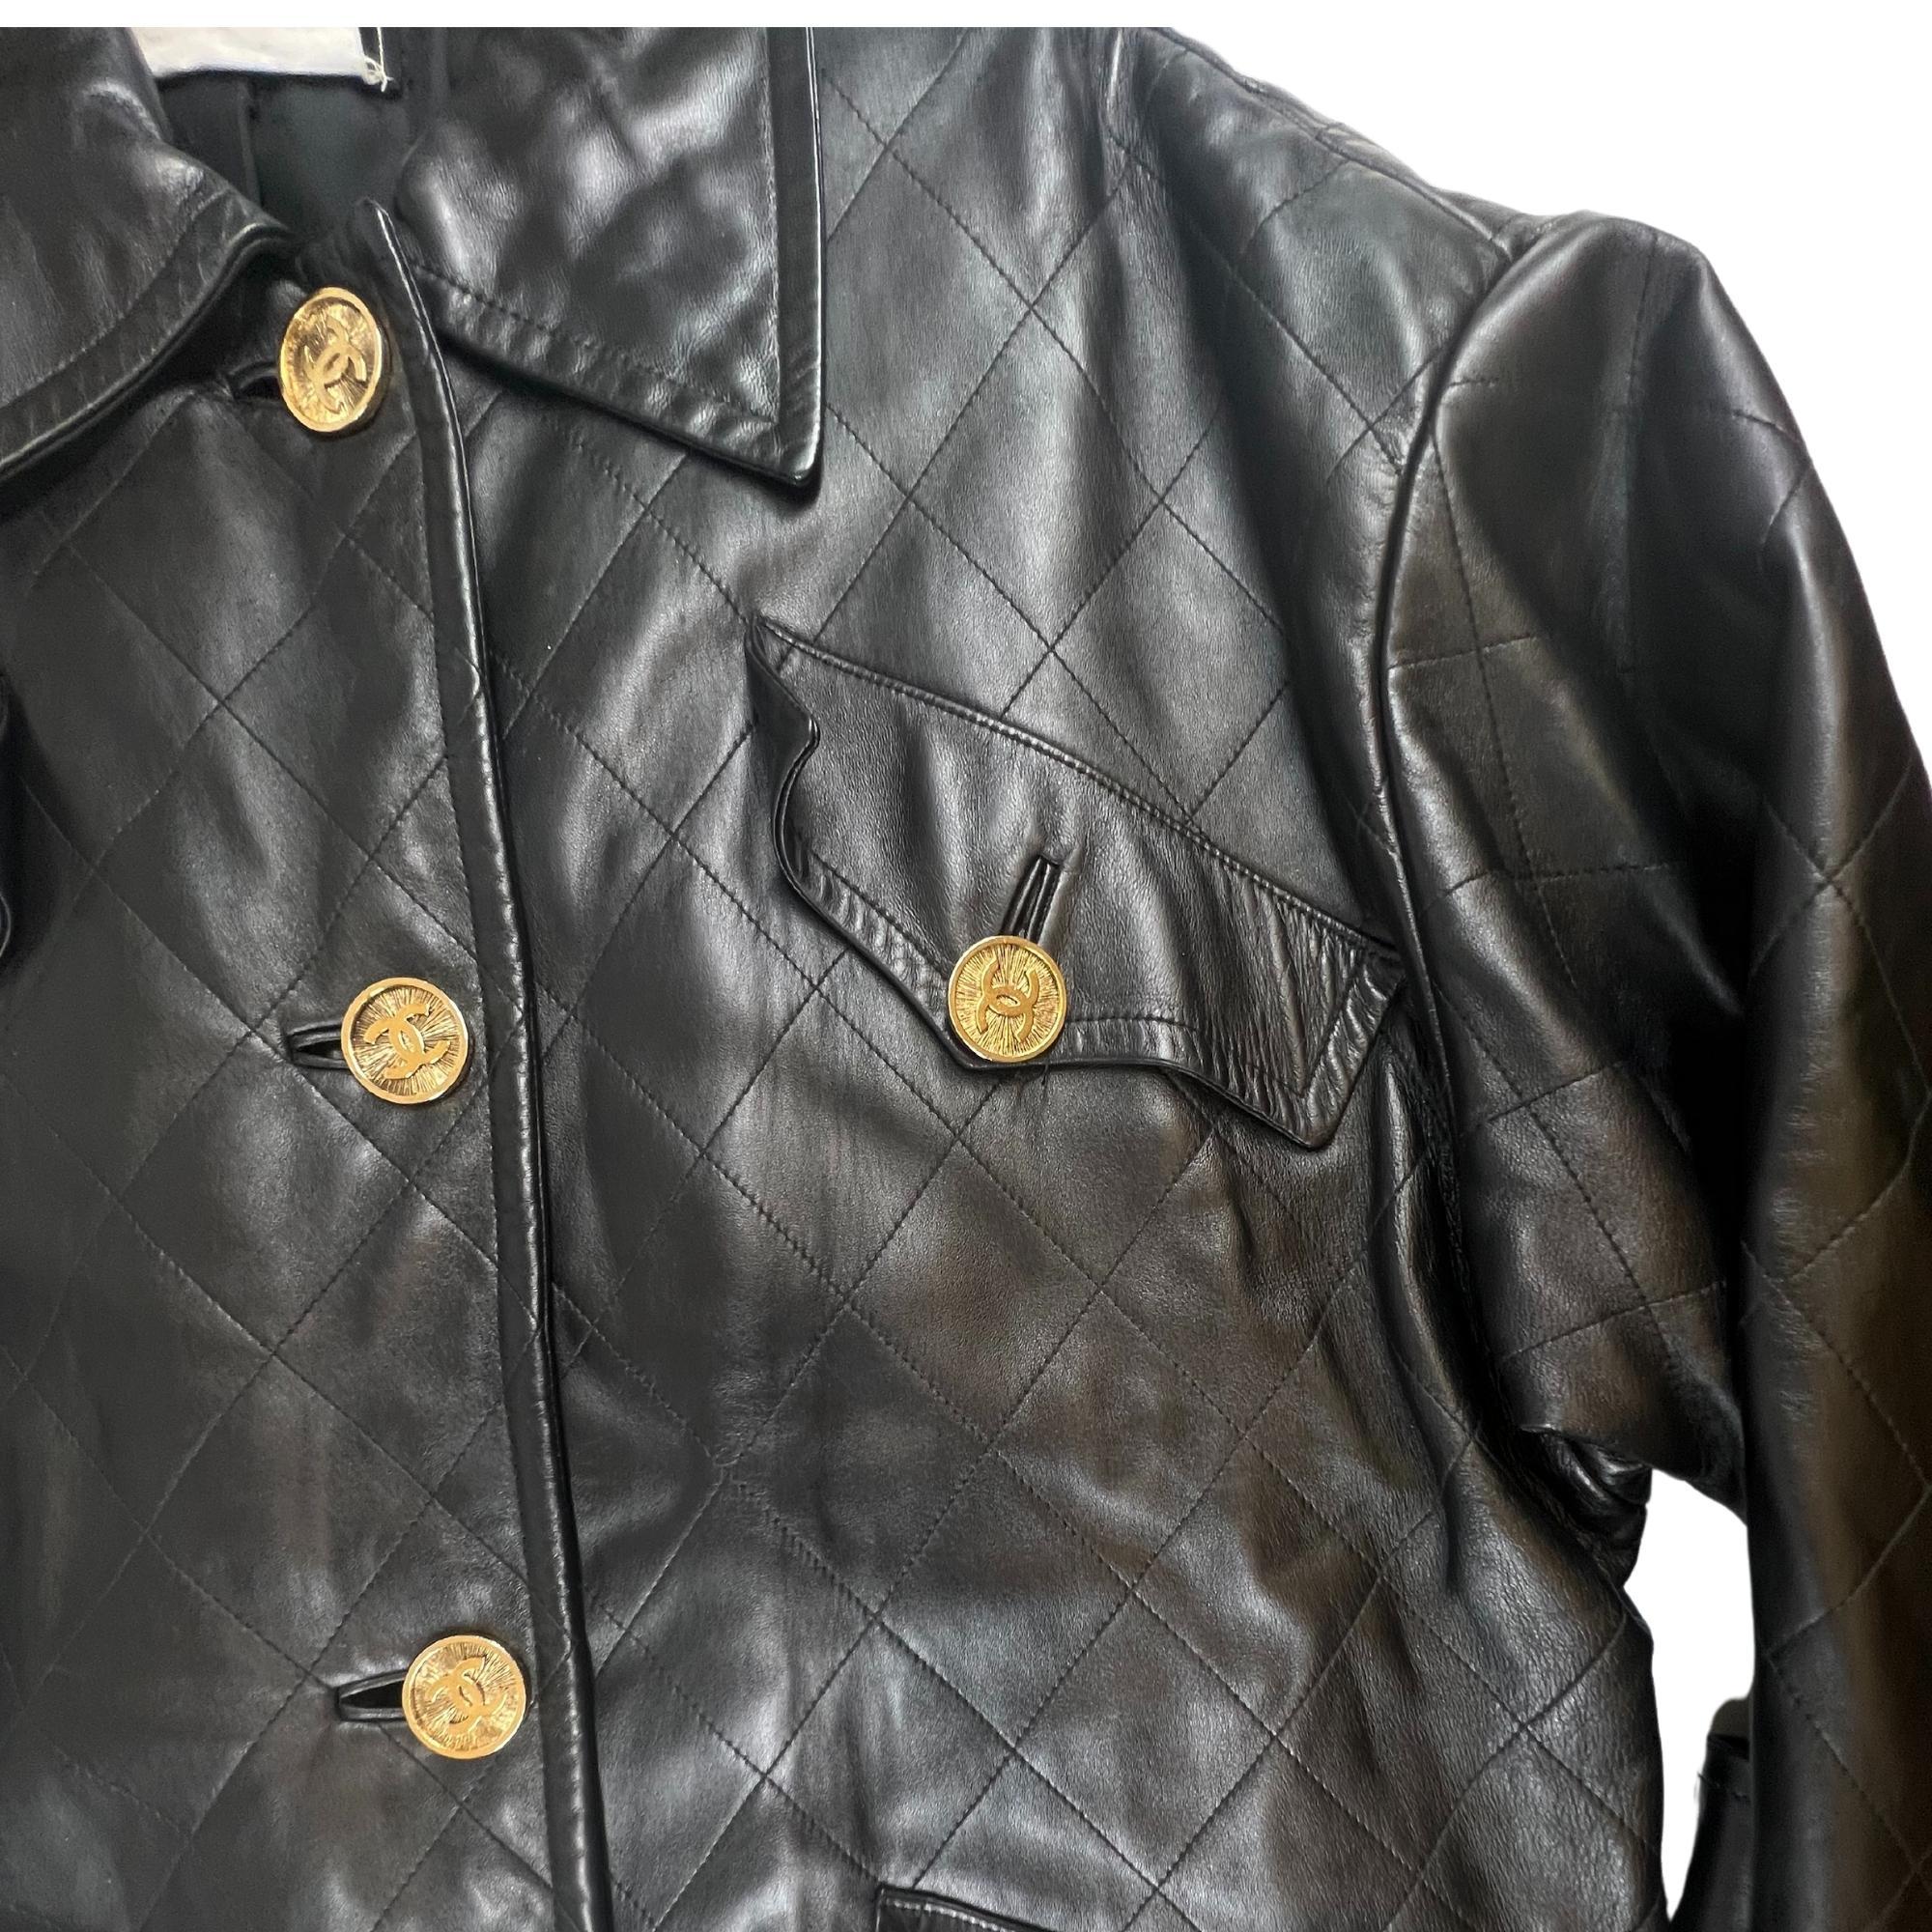 Women's Chanel Vintage Black Leather Swing Coat (FR44)